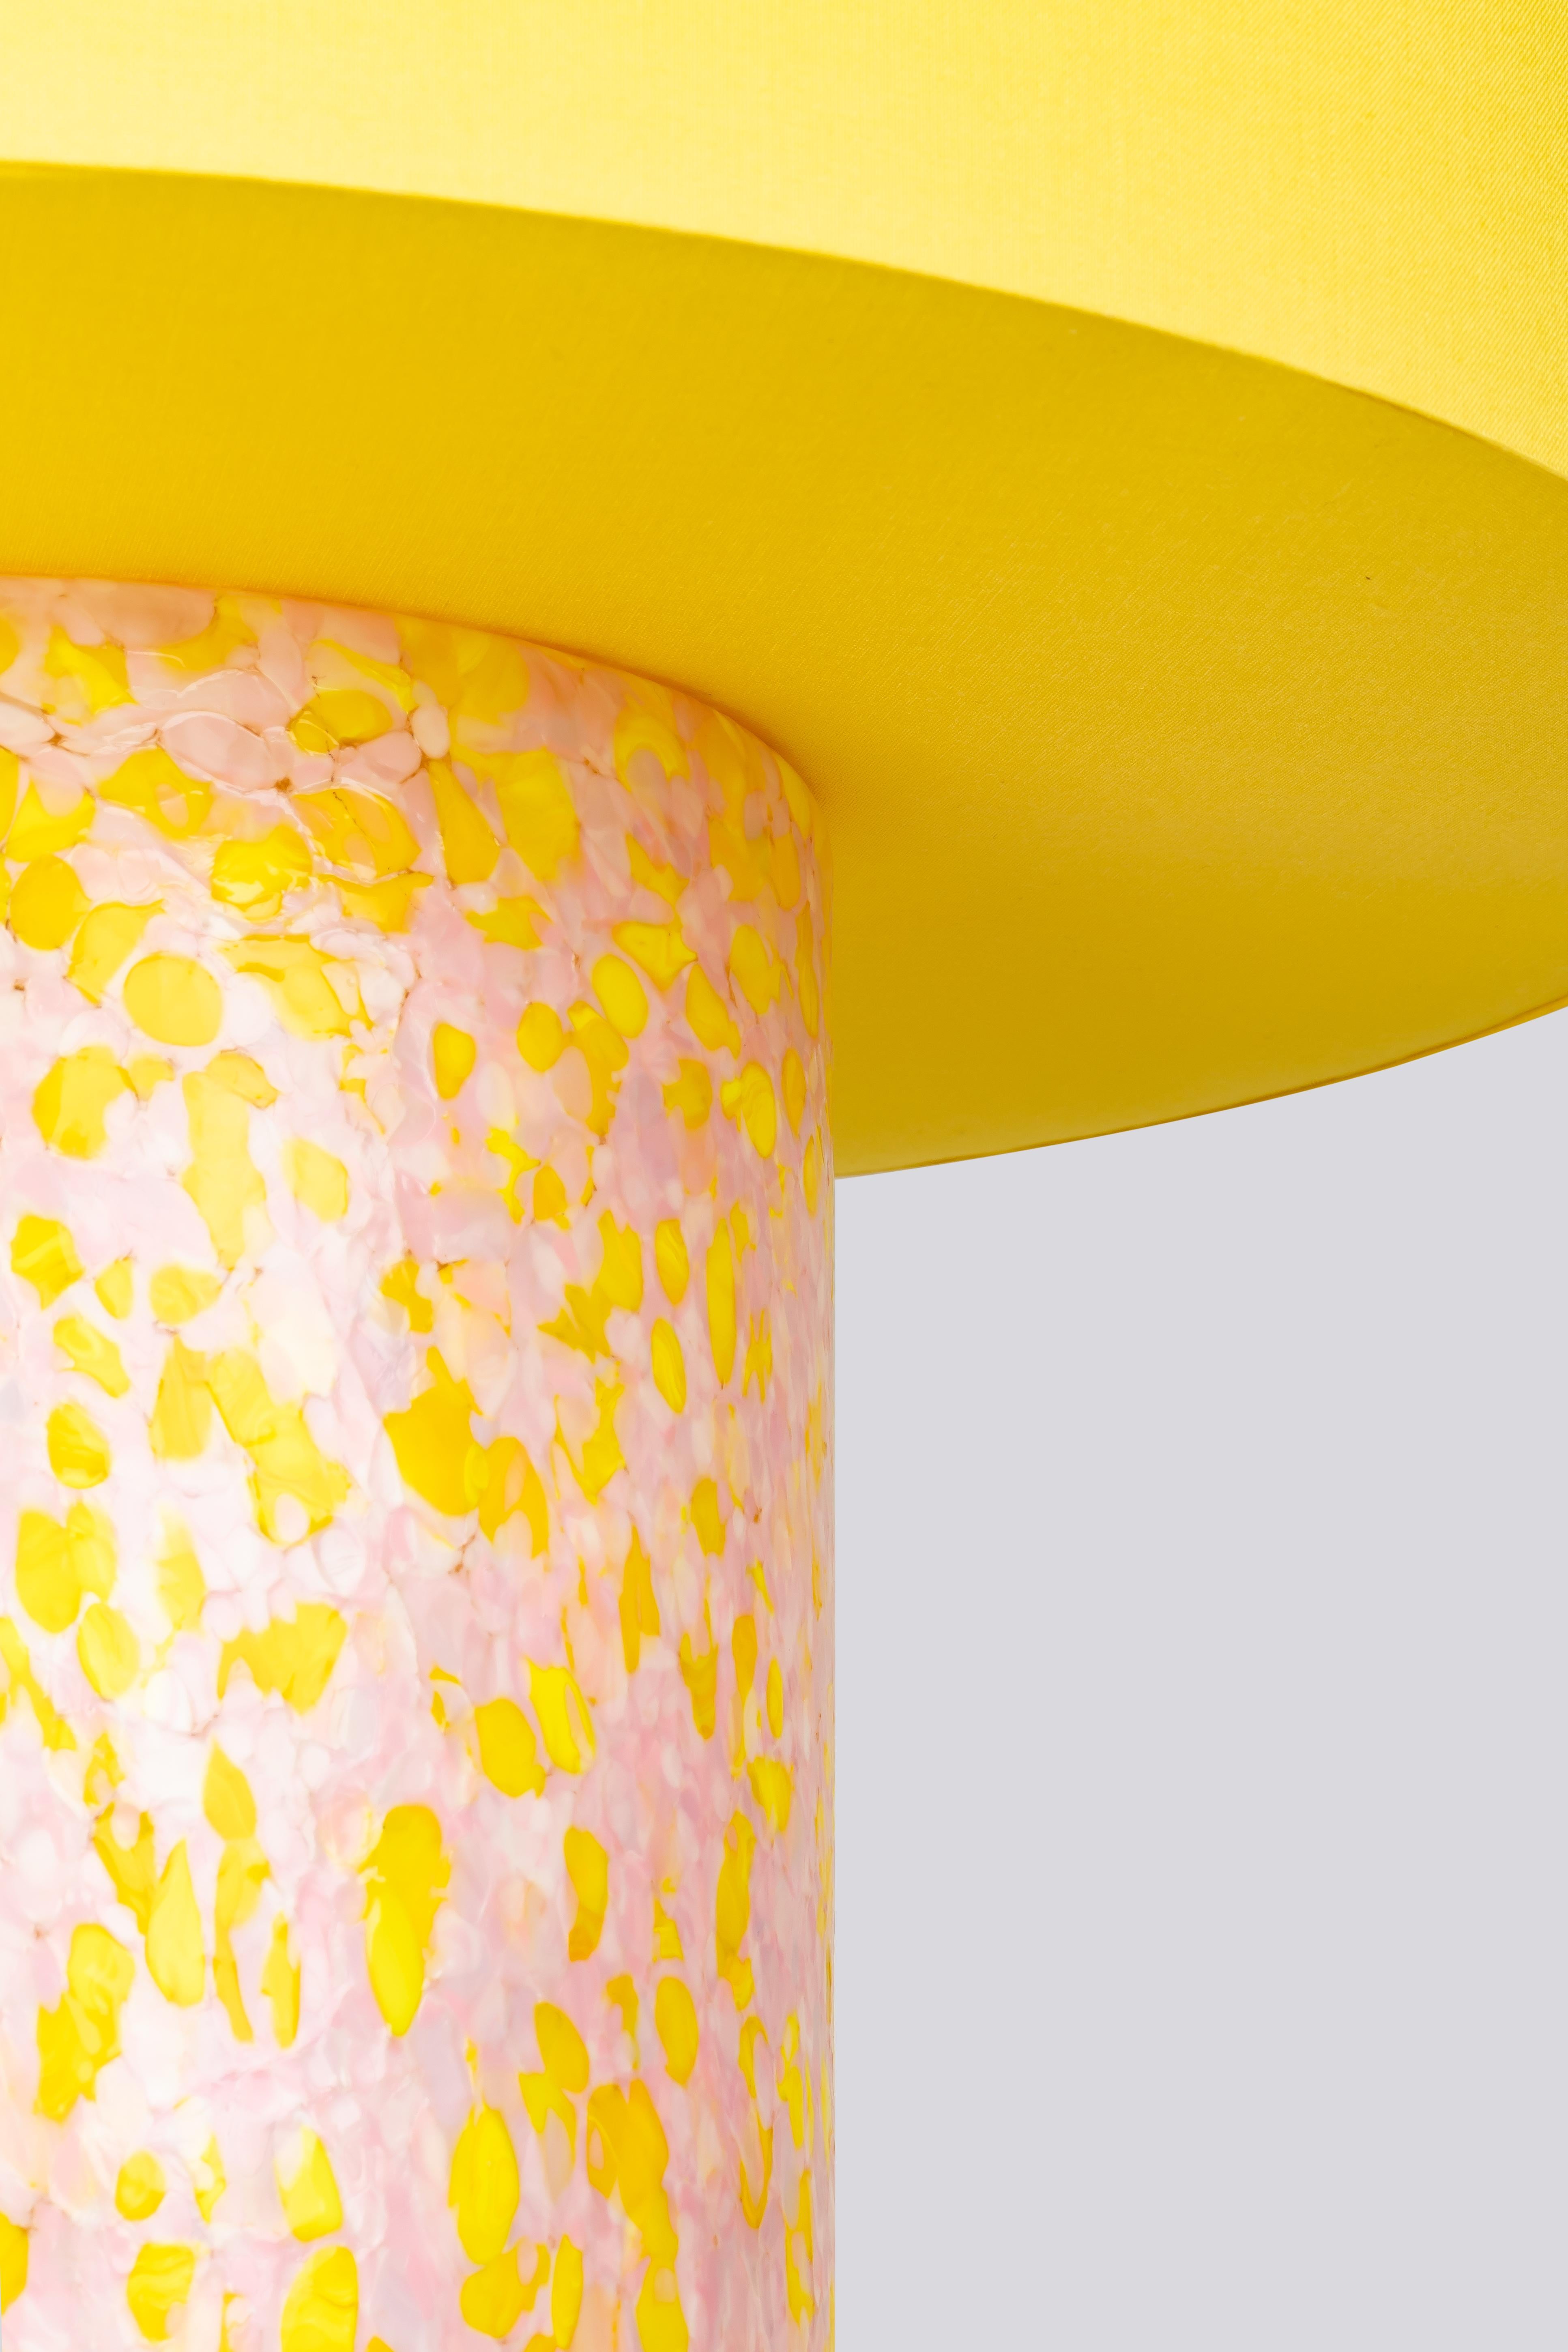 Découvrez notre lampe pilier en verre de Murano, une pièce intemporelle et contemporaine qui allie élégance et savoir-faire. La base de la lampe, fabriquée de manière experte dans une forme de colonne classique, met en valeur la technique